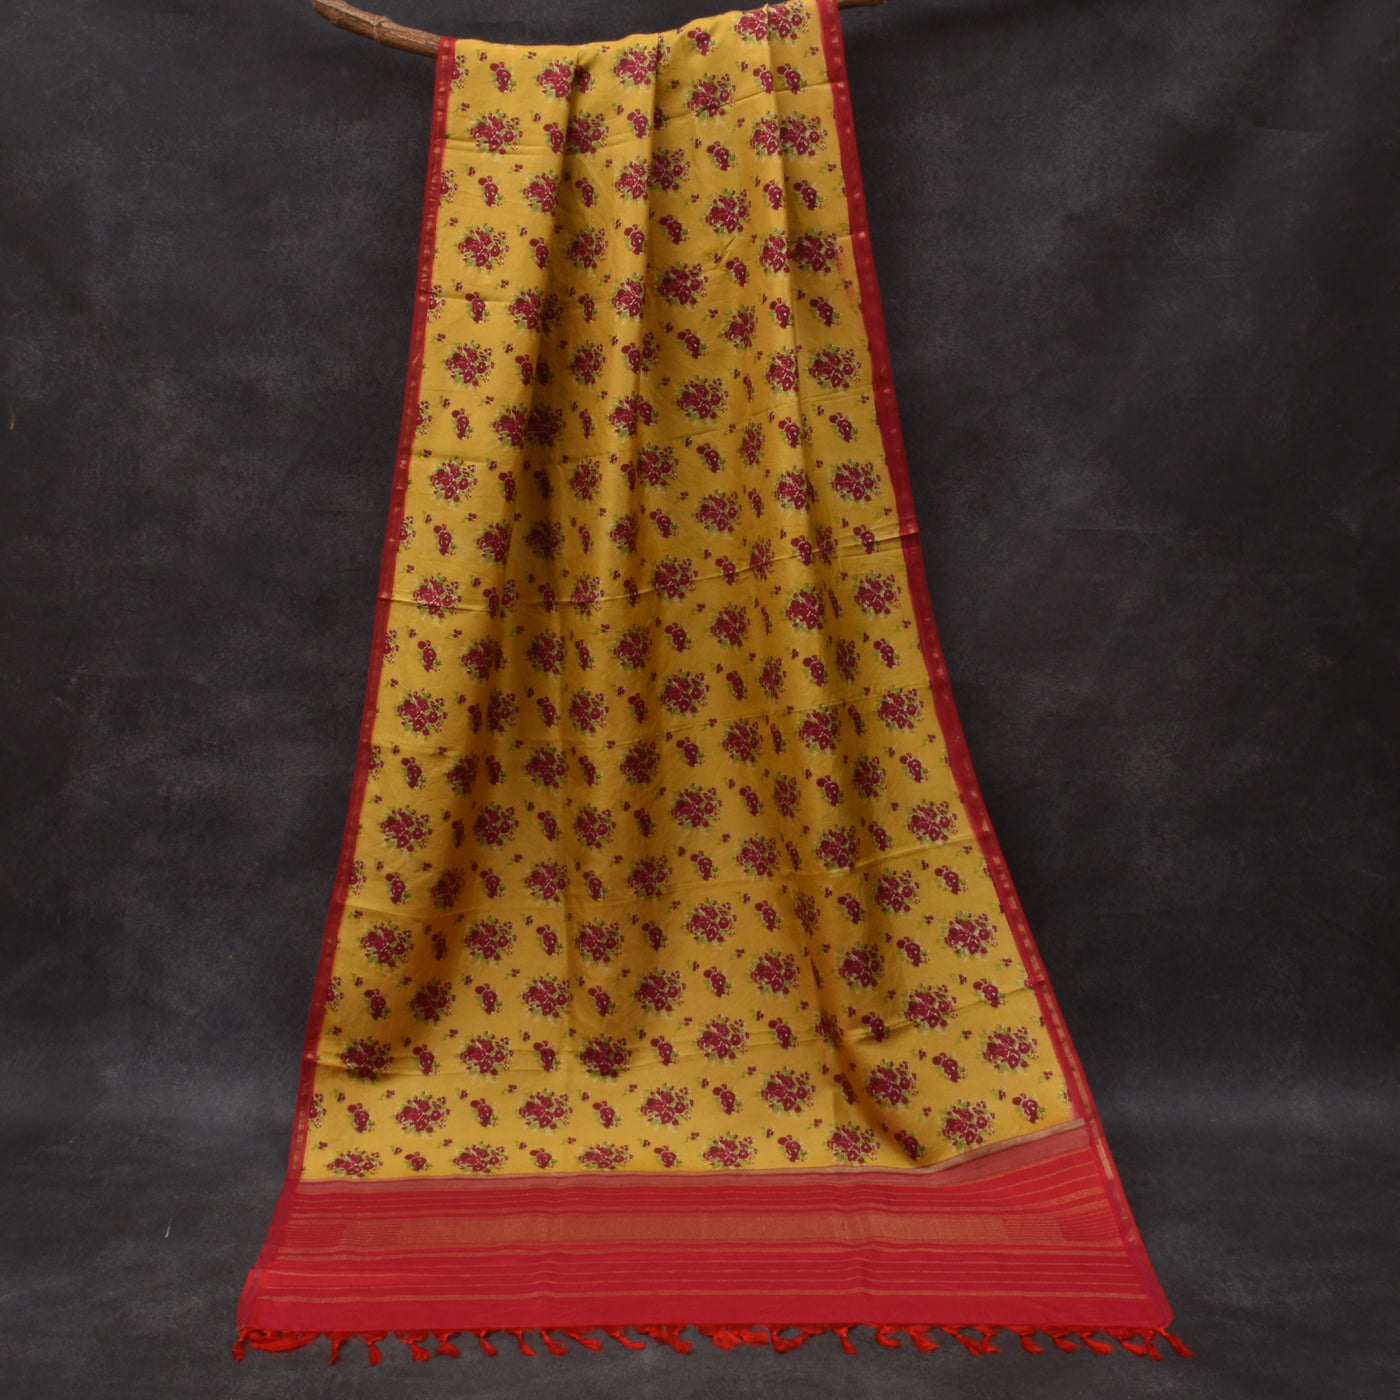 Mustard Floral Printed Kanchi Silk Dupatta with Arakku Thakkali Seer Border Design